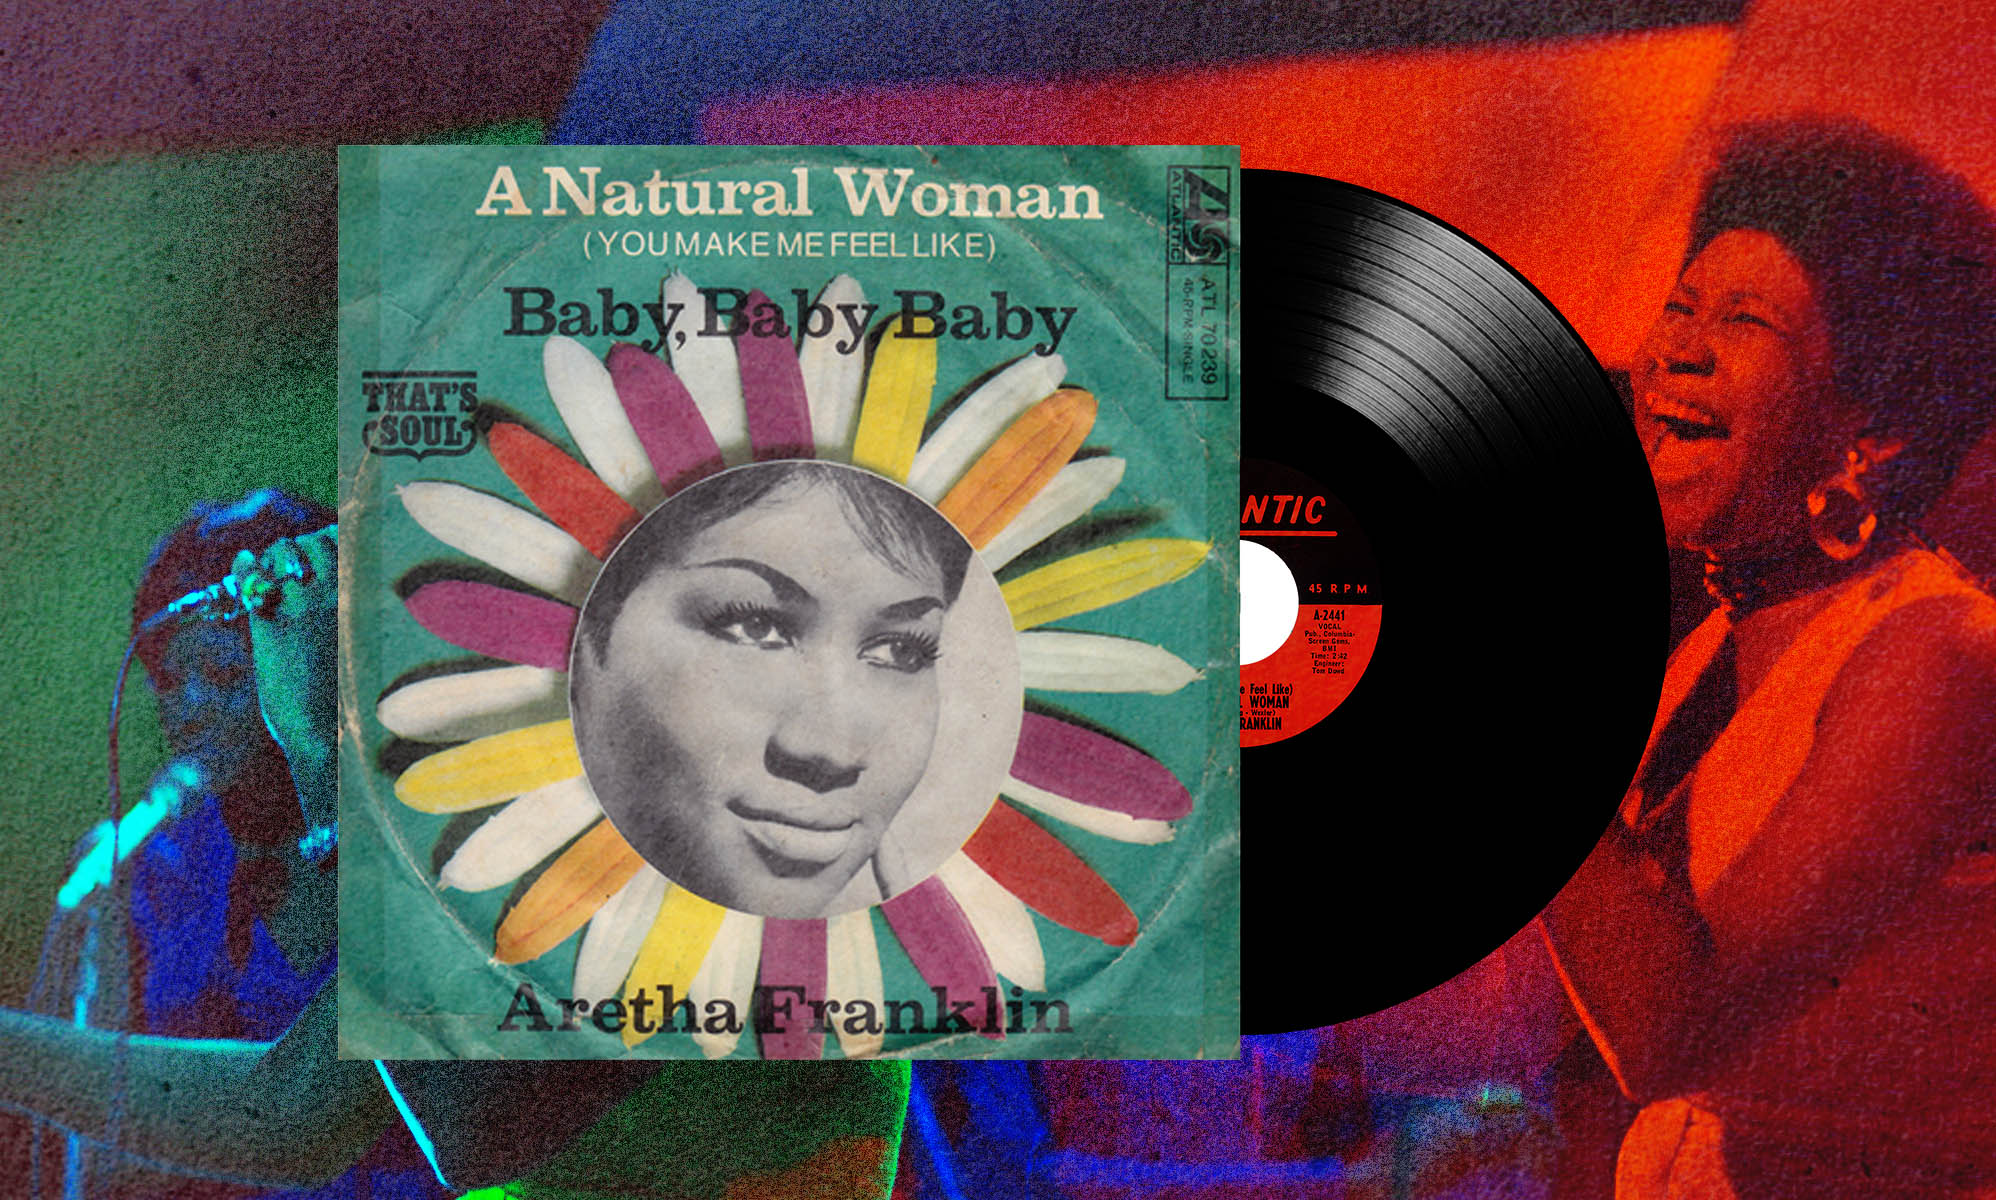 Los activistas trans no están cancelando la canción "Natural Woman" de Aretha Franklin